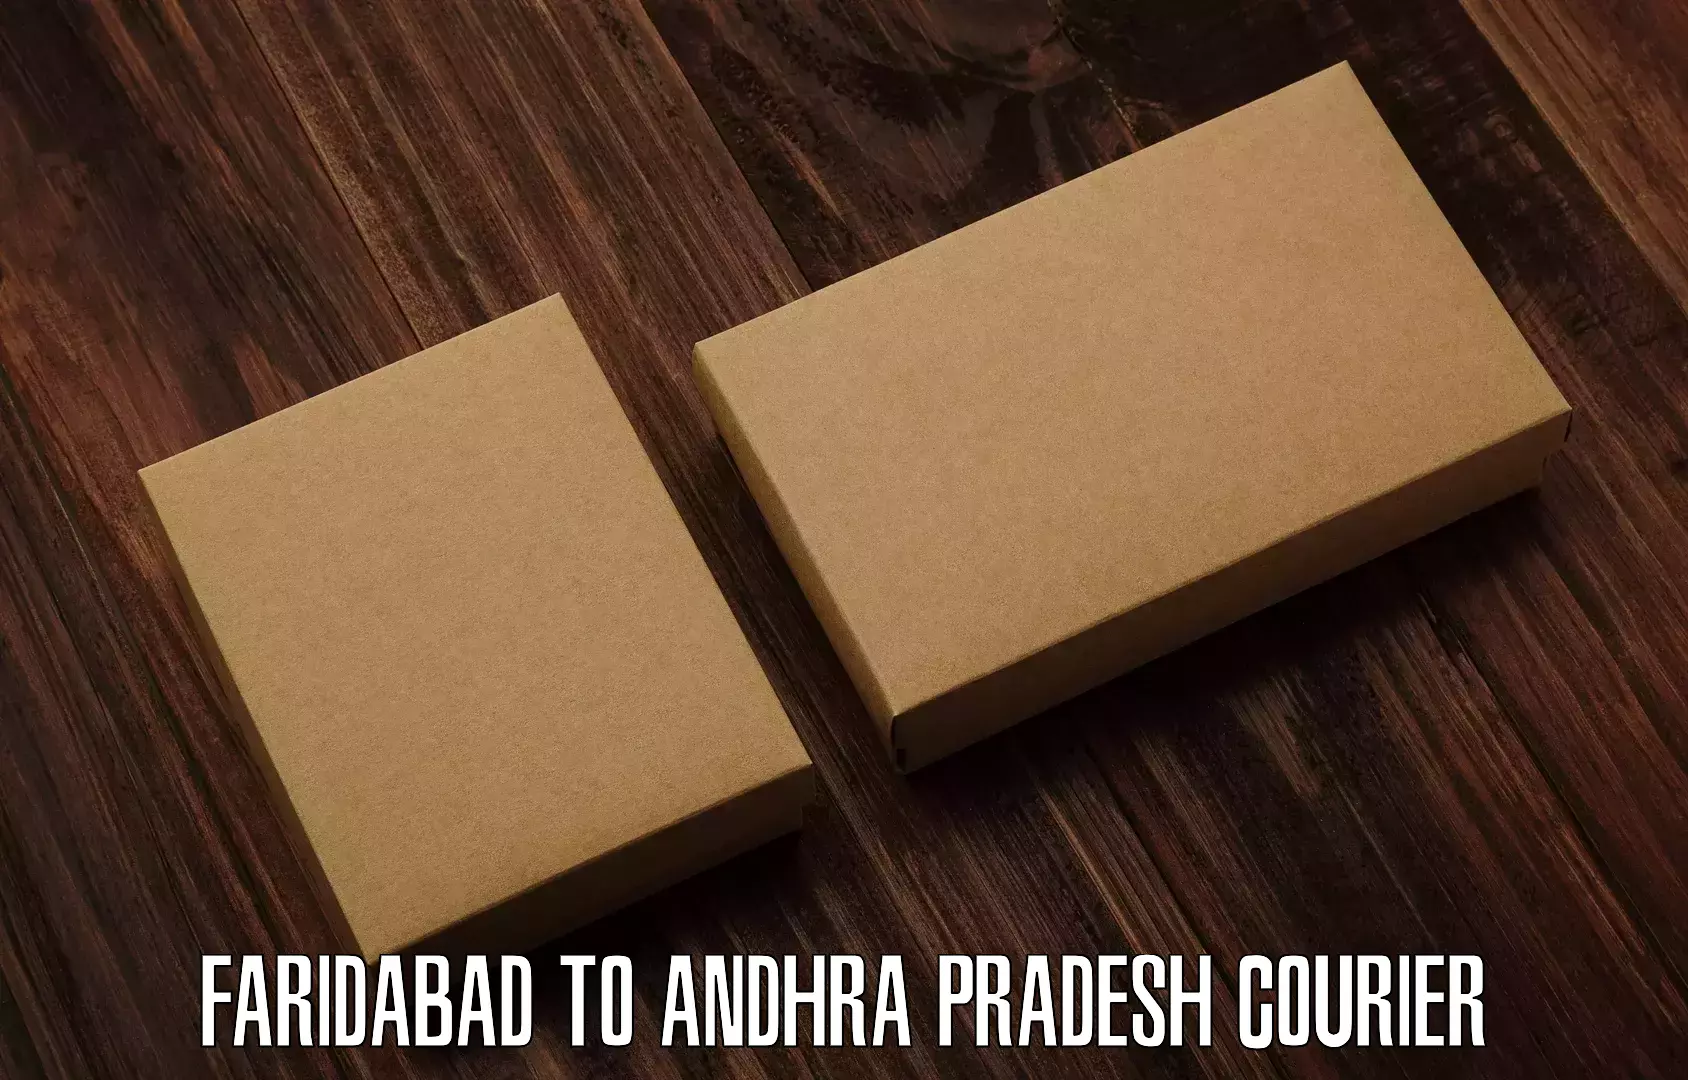 Express mail solutions Faridabad to Andhra Pradesh